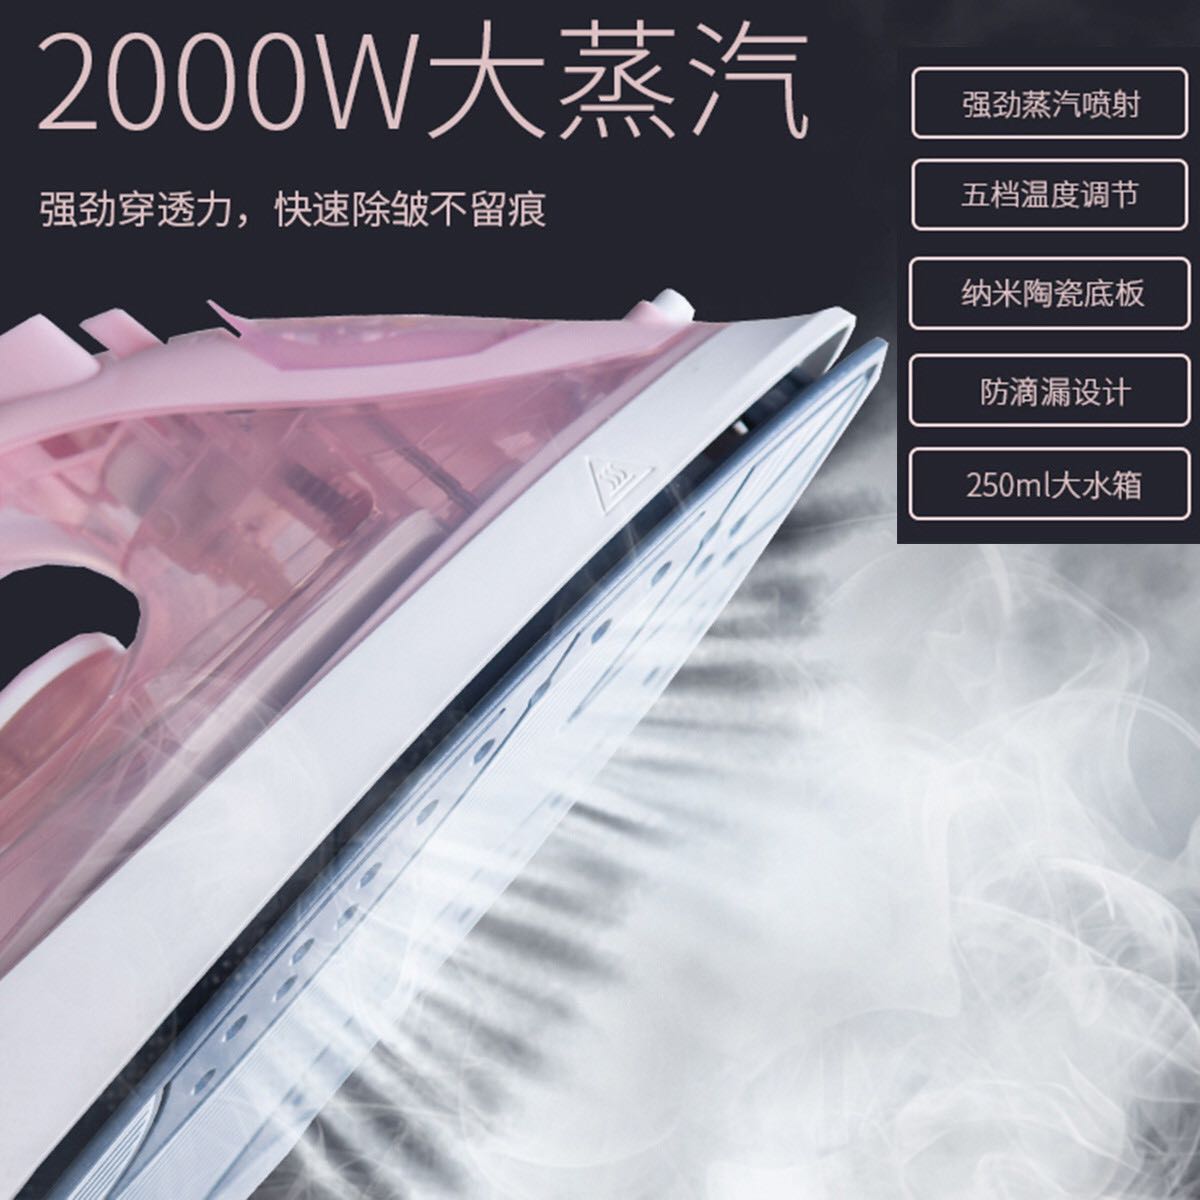 HONGXIN 上海红心 红心家用蒸汽电熨斗小型熨斗手持式大功率2000W大水容量粉色 99元